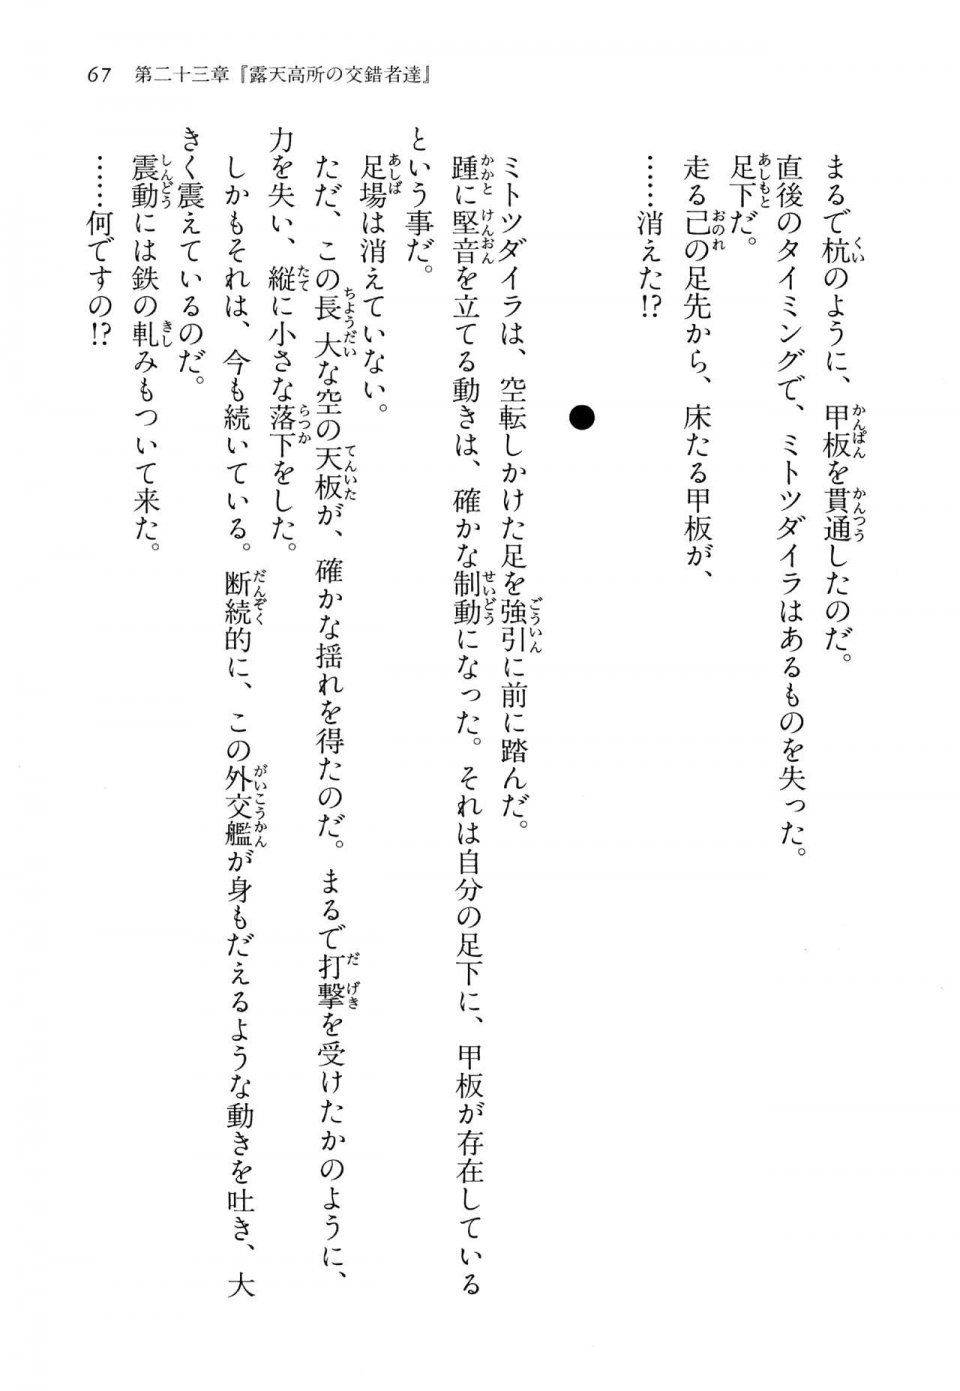 Kyoukai Senjou no Horizon LN Vol 14(6B) - Photo #67